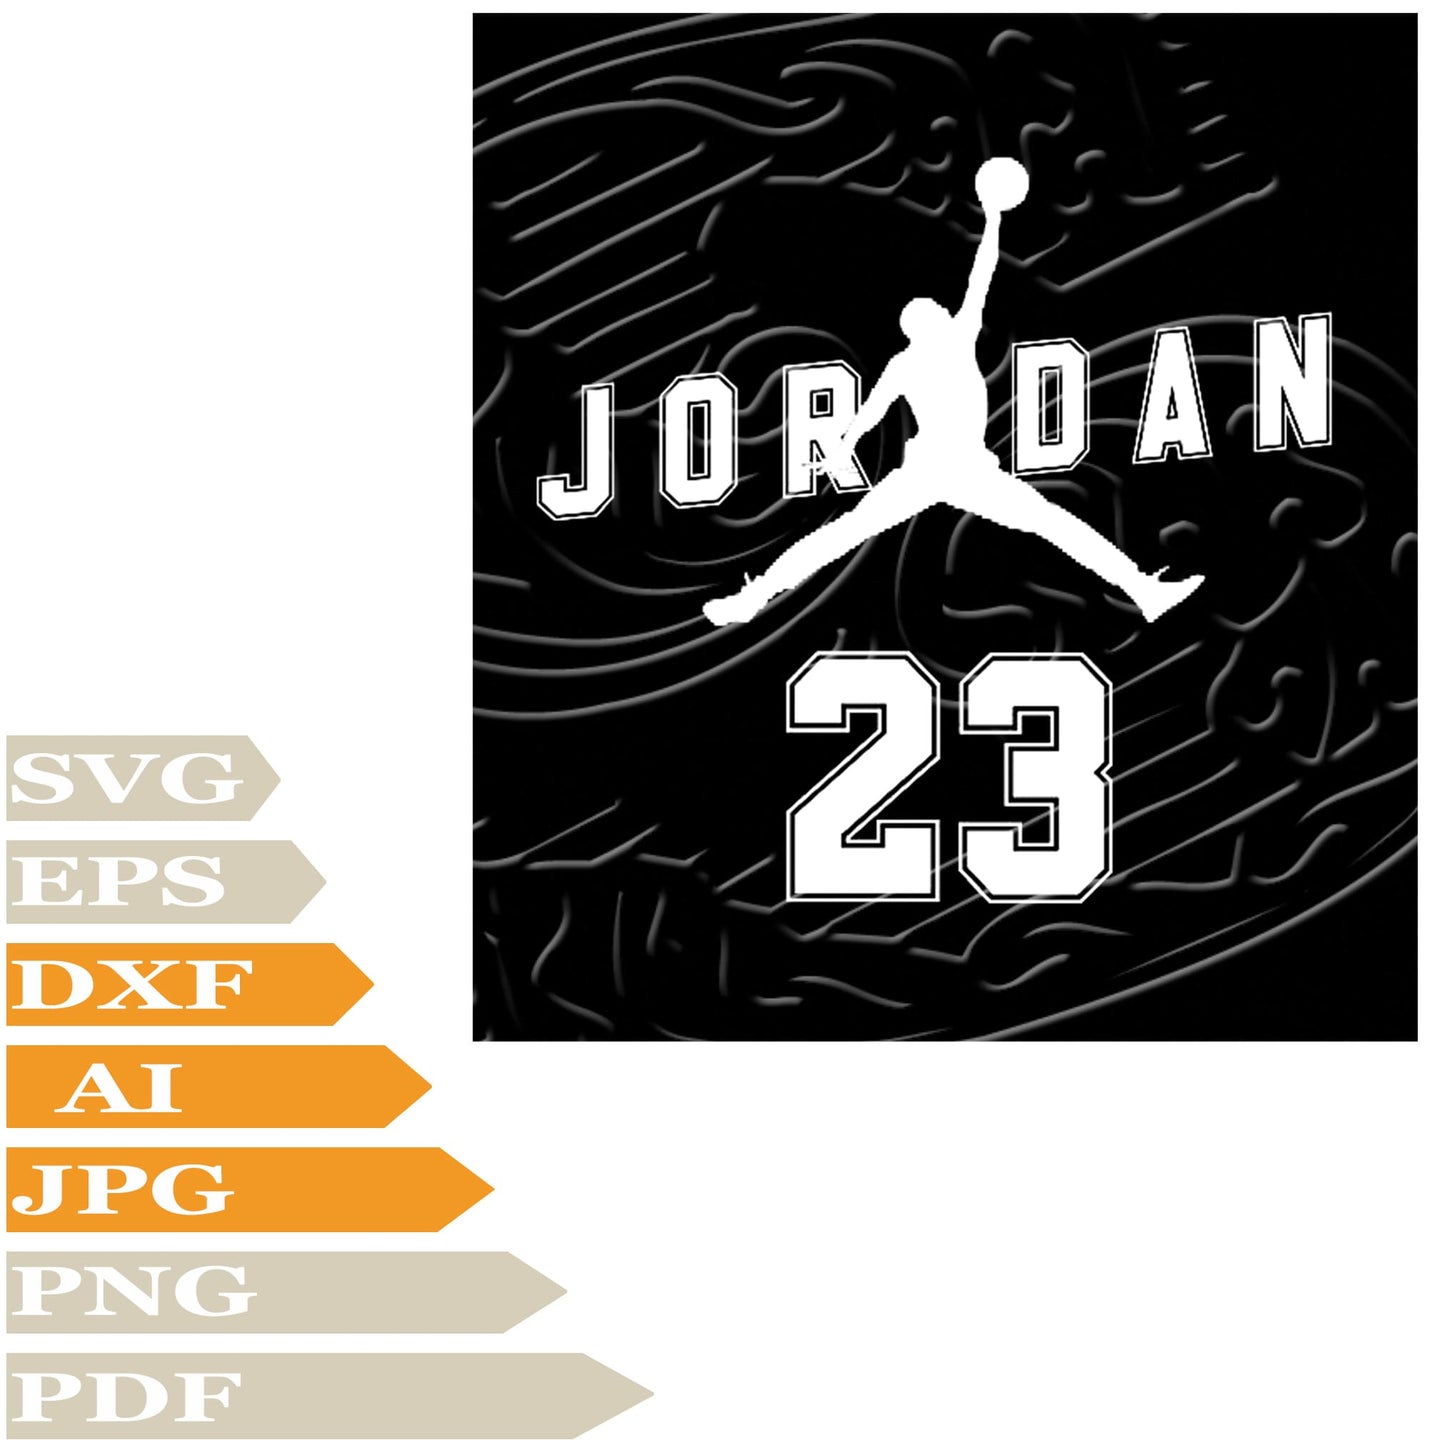 Michael Jordan, Air Jordan Svg File, Image Cut, Png, For Tattoo, Silhouette, Digital Vector Download, Cut File, Clipart, For Cricut